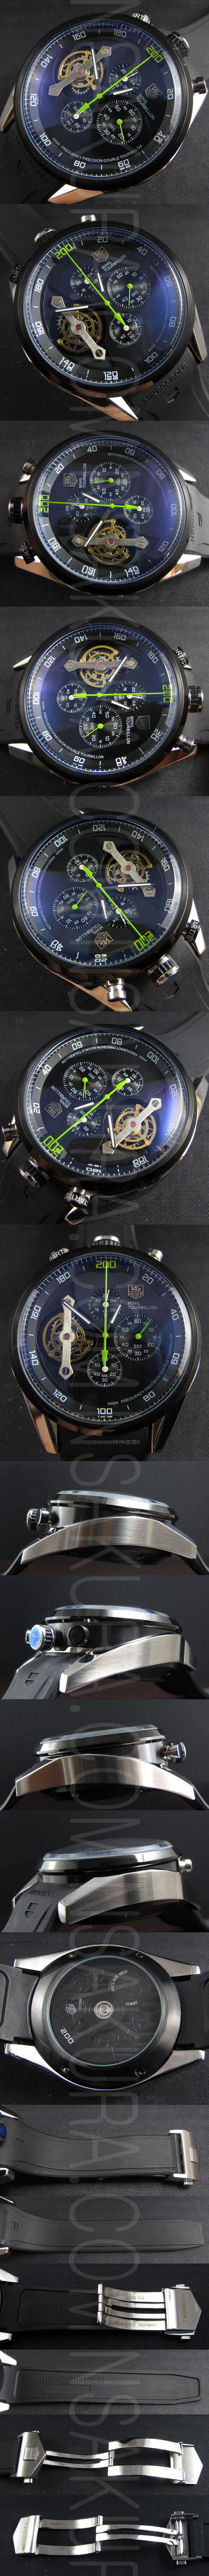 メンズ腕時計 TAG HEUER コピー カレラ マイクロガーダー 200 ダークブルー スモールセコンド ラバーベルト